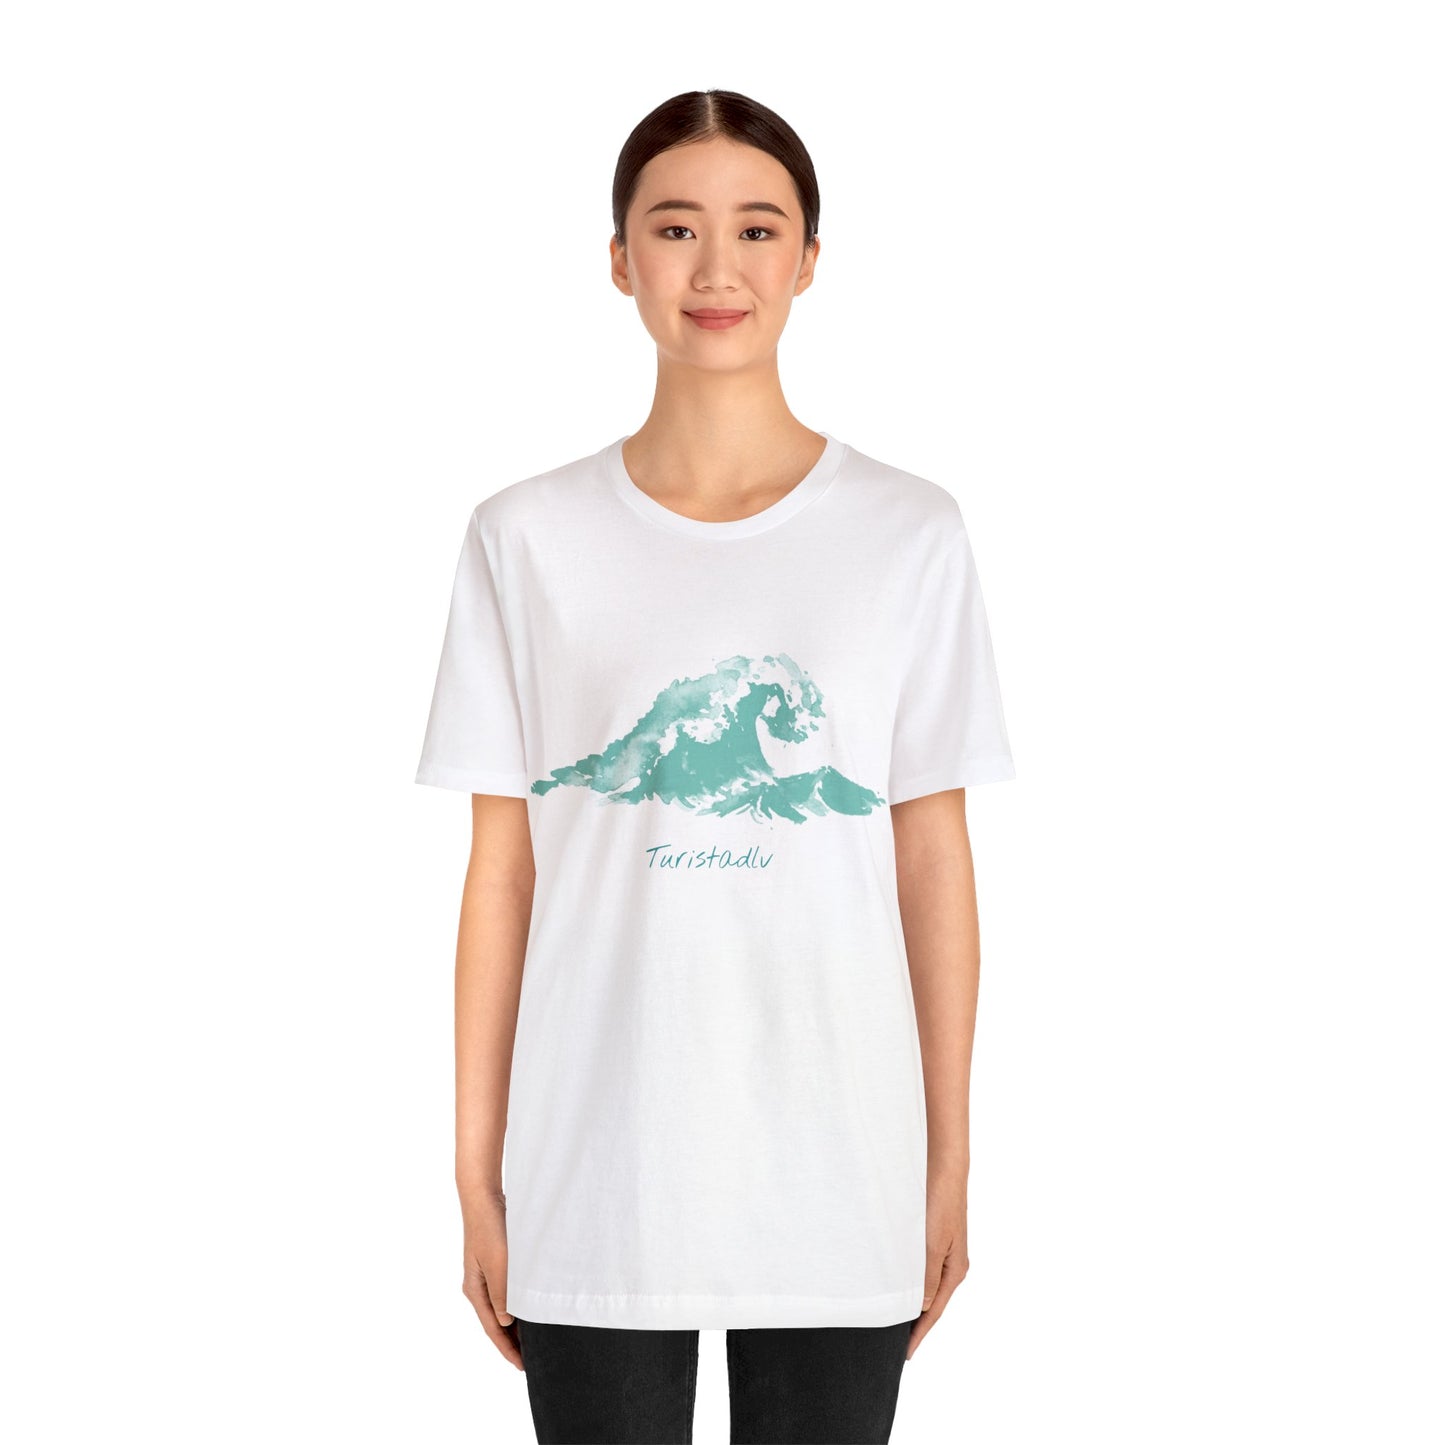 Camiseta de ola de playa, camiseta de viajero, regalo de surf, camiseta de viaje, regalo de viajes, camiseta verano, regalo de surfista